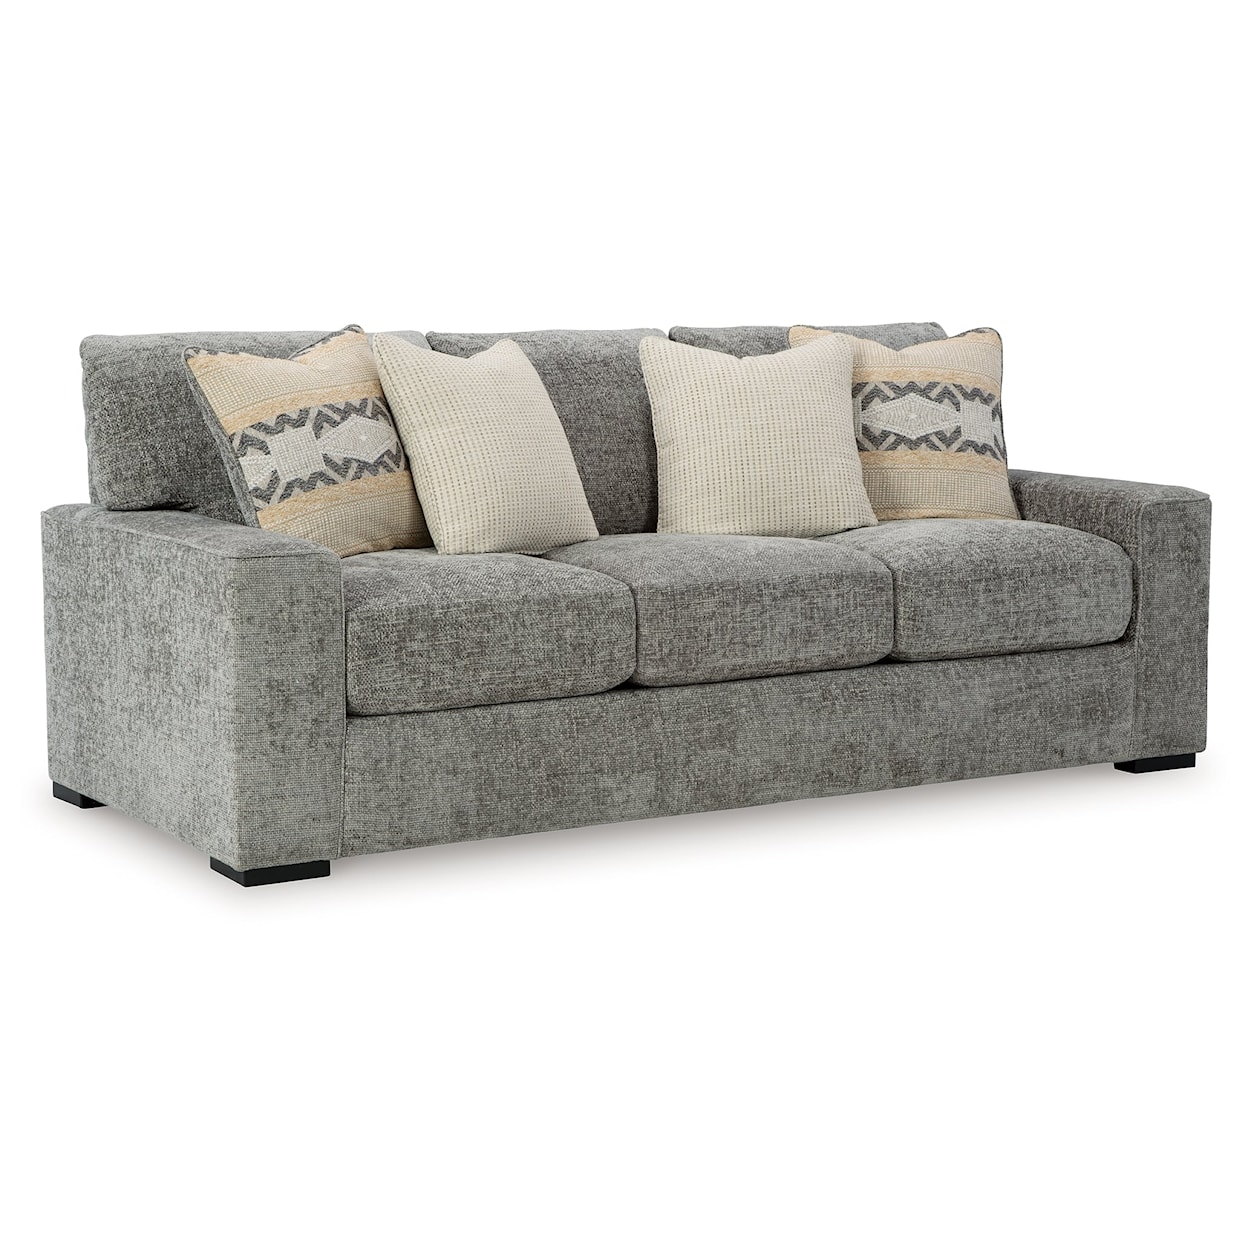 Ashley Furniture Signature Design Dunmor Sofa